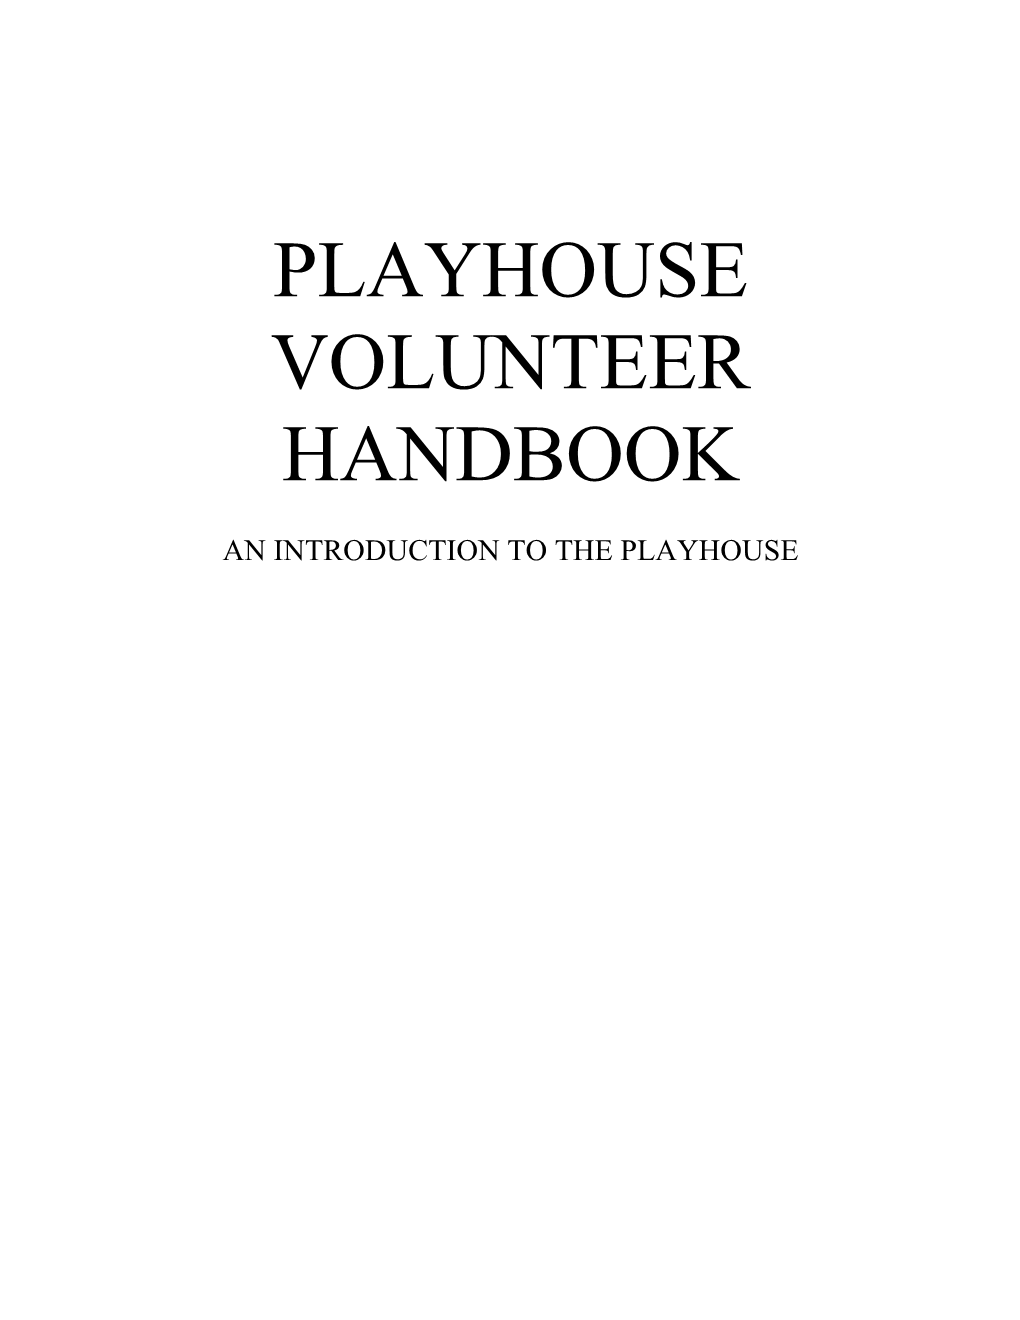 Playhouse Volunteer